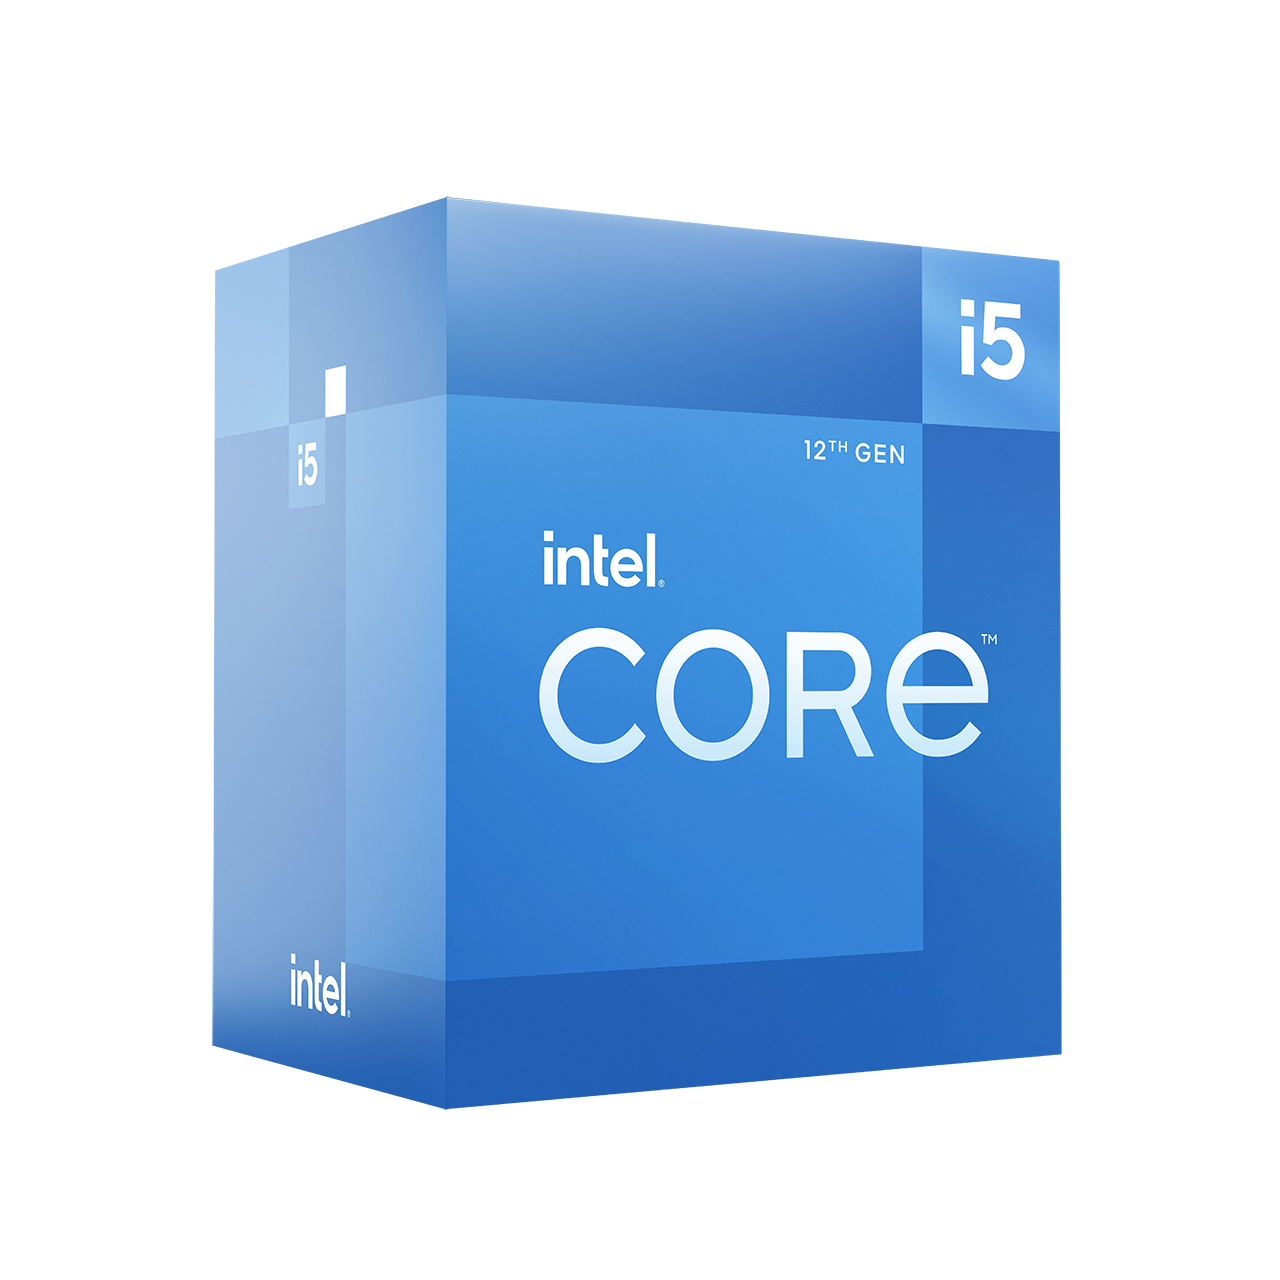 インテル® Core™ i5-12600 プロセッサー - 18M キャッシュ、最大 4.80 